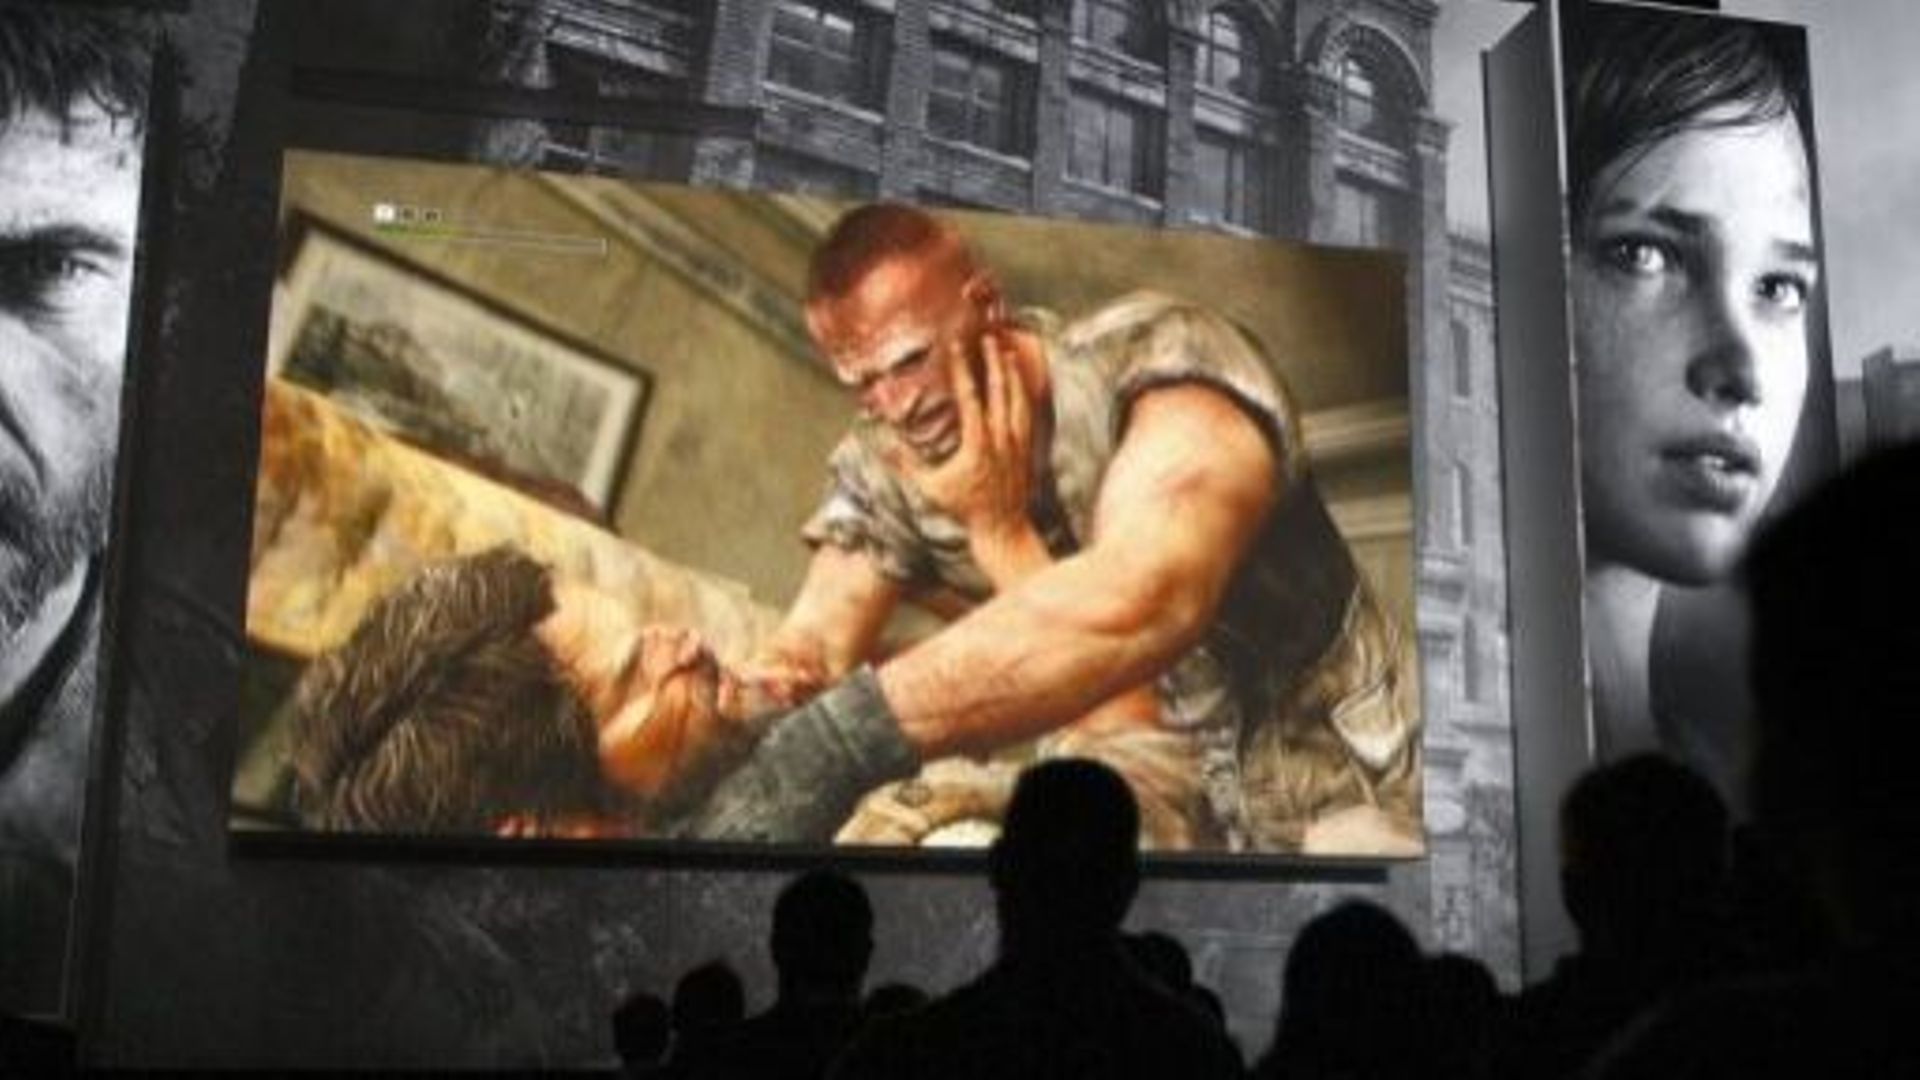 Présentation du jeu vidéo "The Last of Us" lors d'une conférence de presse de Sony, le 4 juin 2012 à Los Angeles